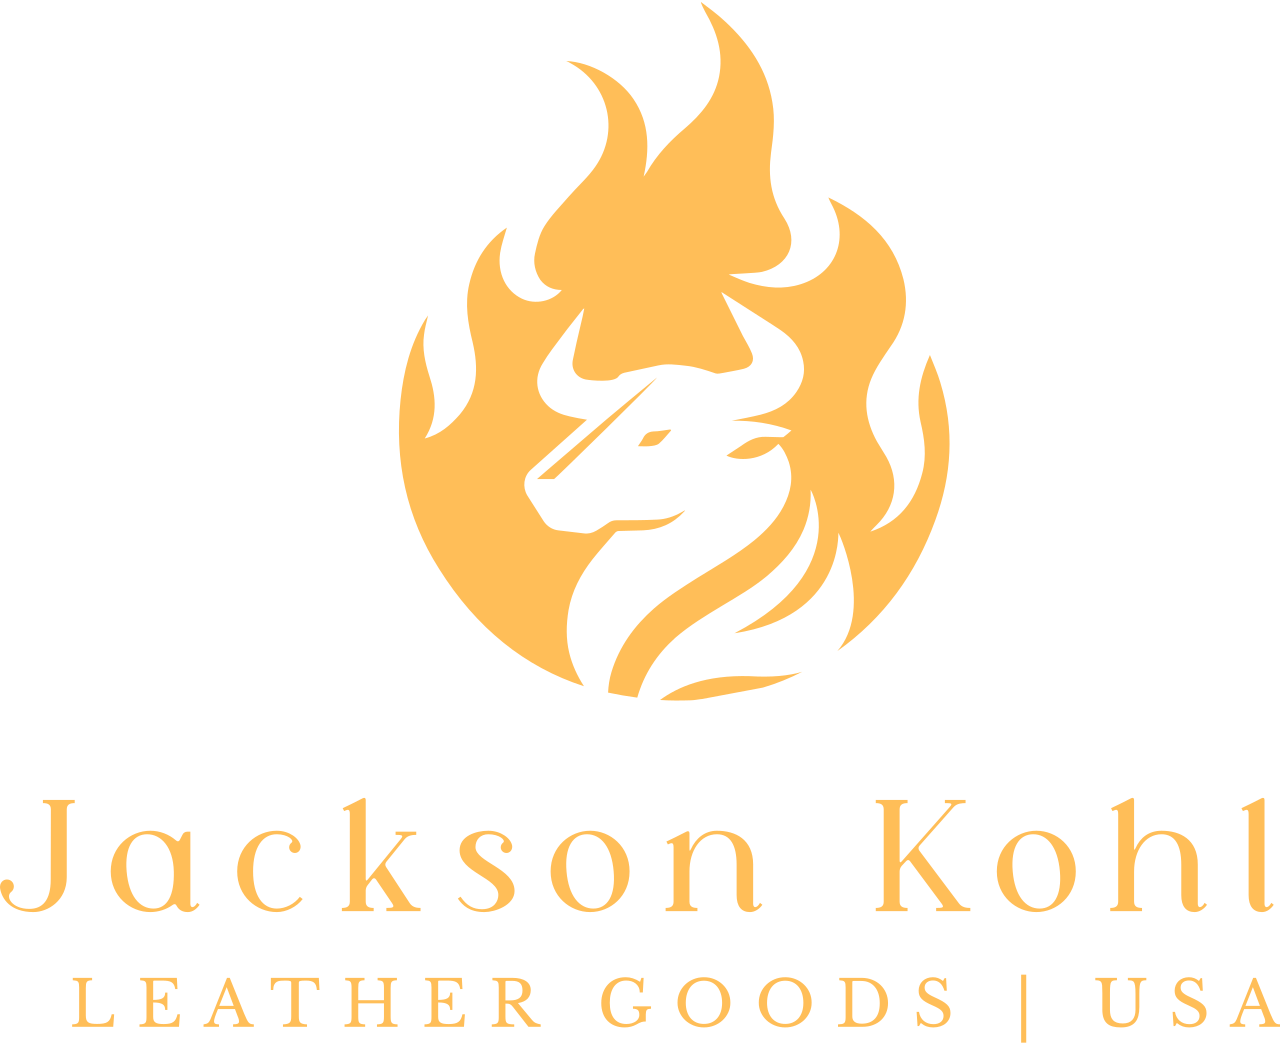 Jackson Kohl 's logo